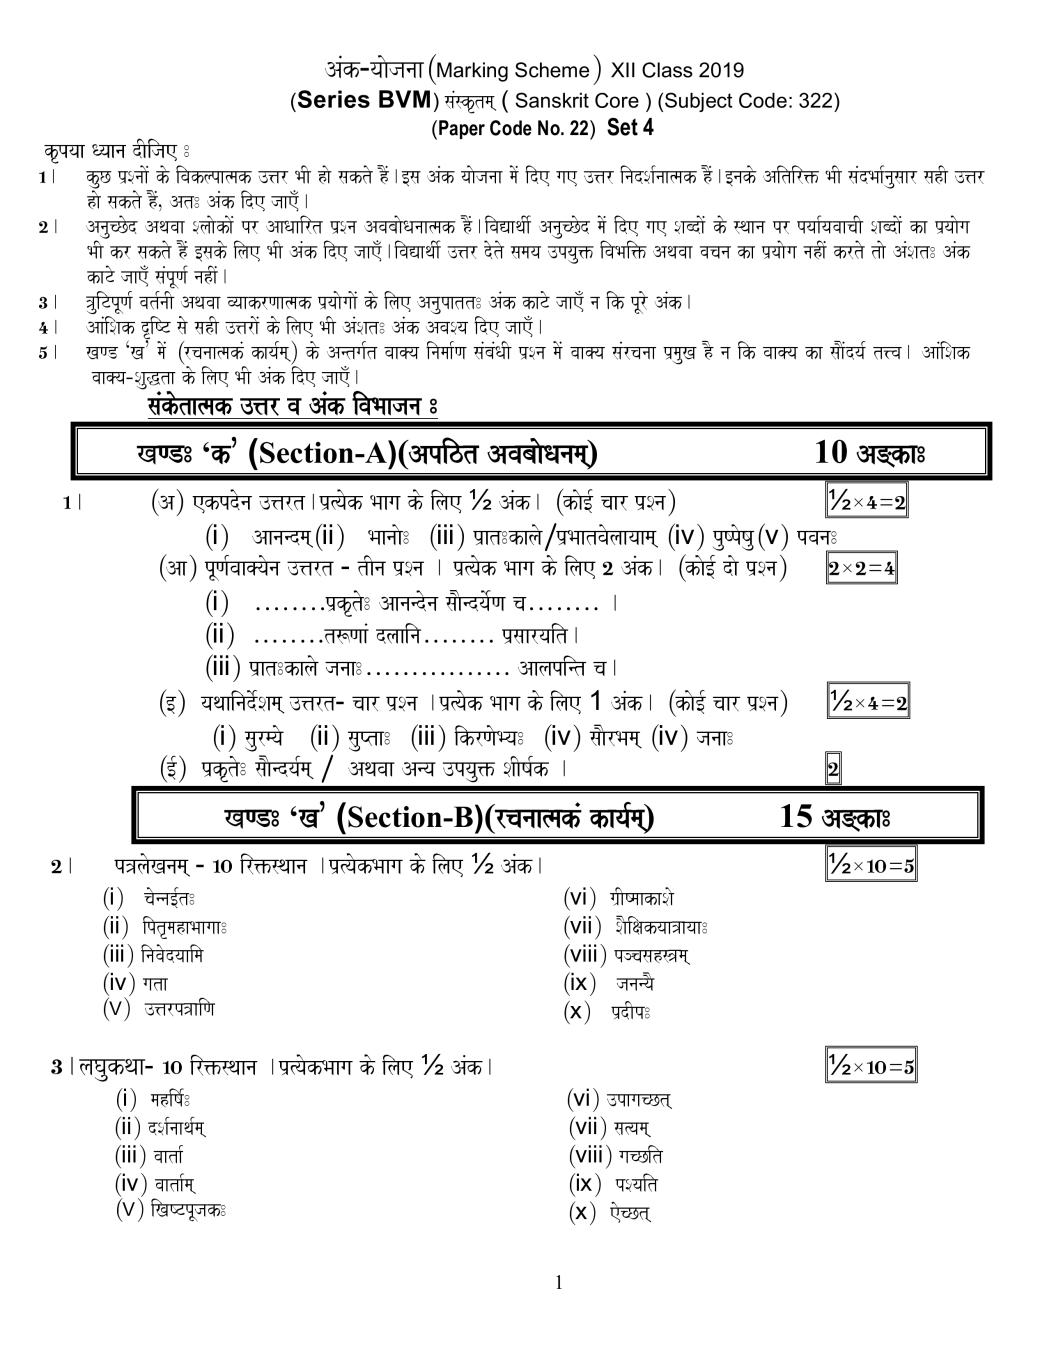 CBSE Class 12 Sanskrit Core Question Paper 2019 Set 2 Solutions - Page 1